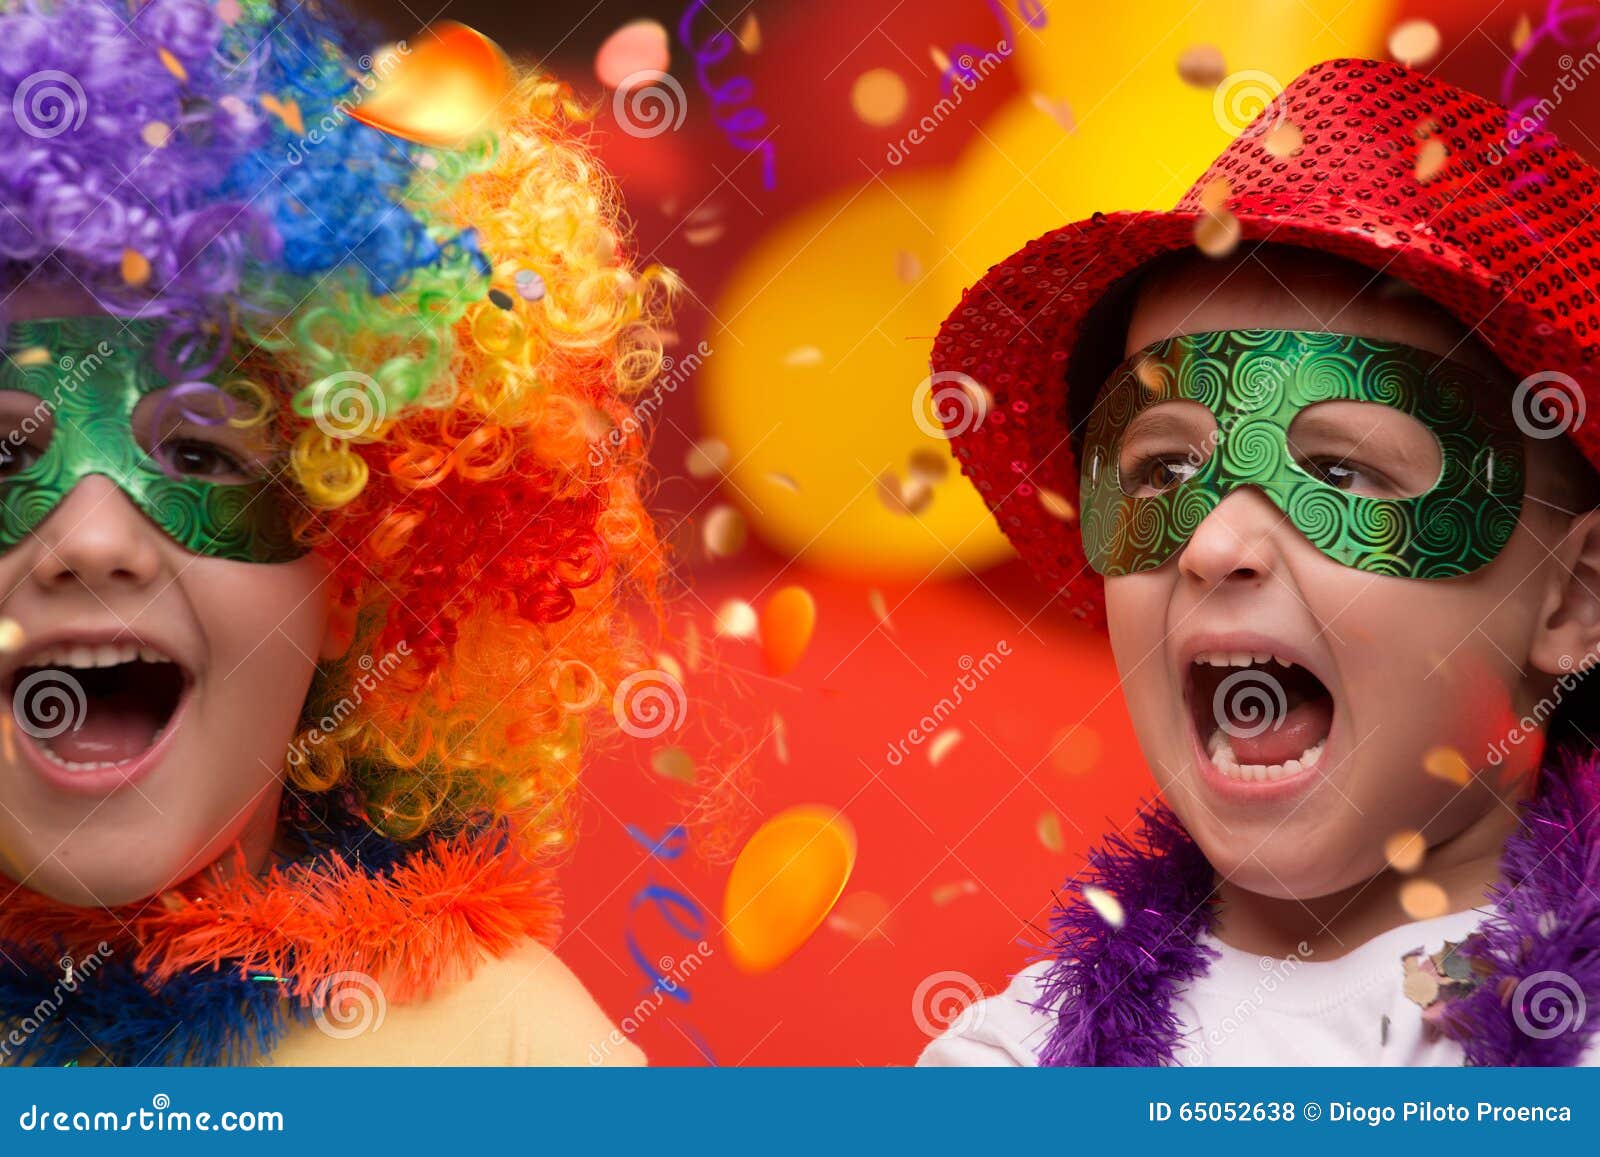 Поставь карнавал. Карнавал для детей. Новогодний карнавал дети. Новогодний маскарад для детей. Детский праздник карнавал.